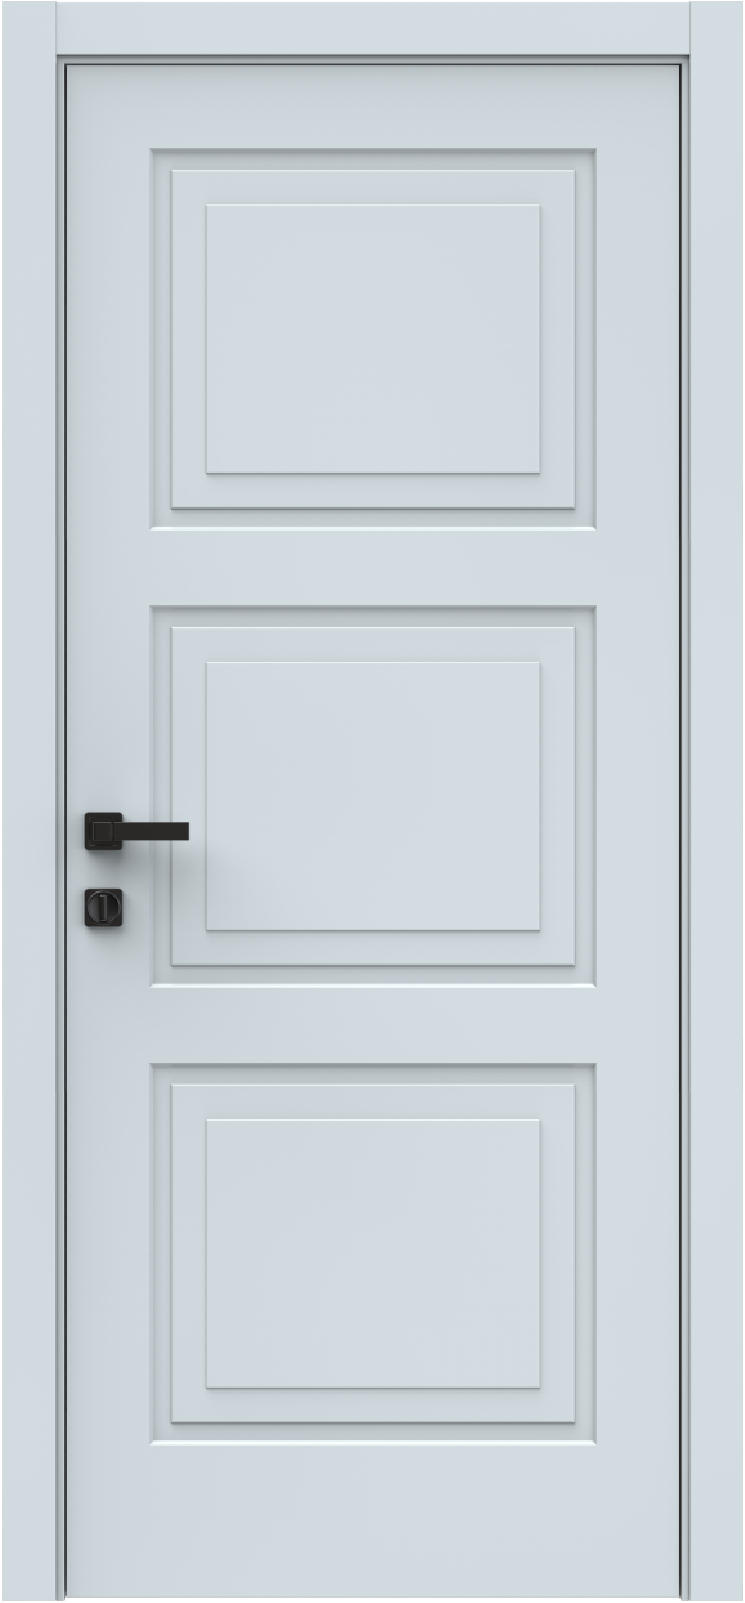 Questdoors Межкомнатная дверь QIZ4, арт. 26339 - фото №1